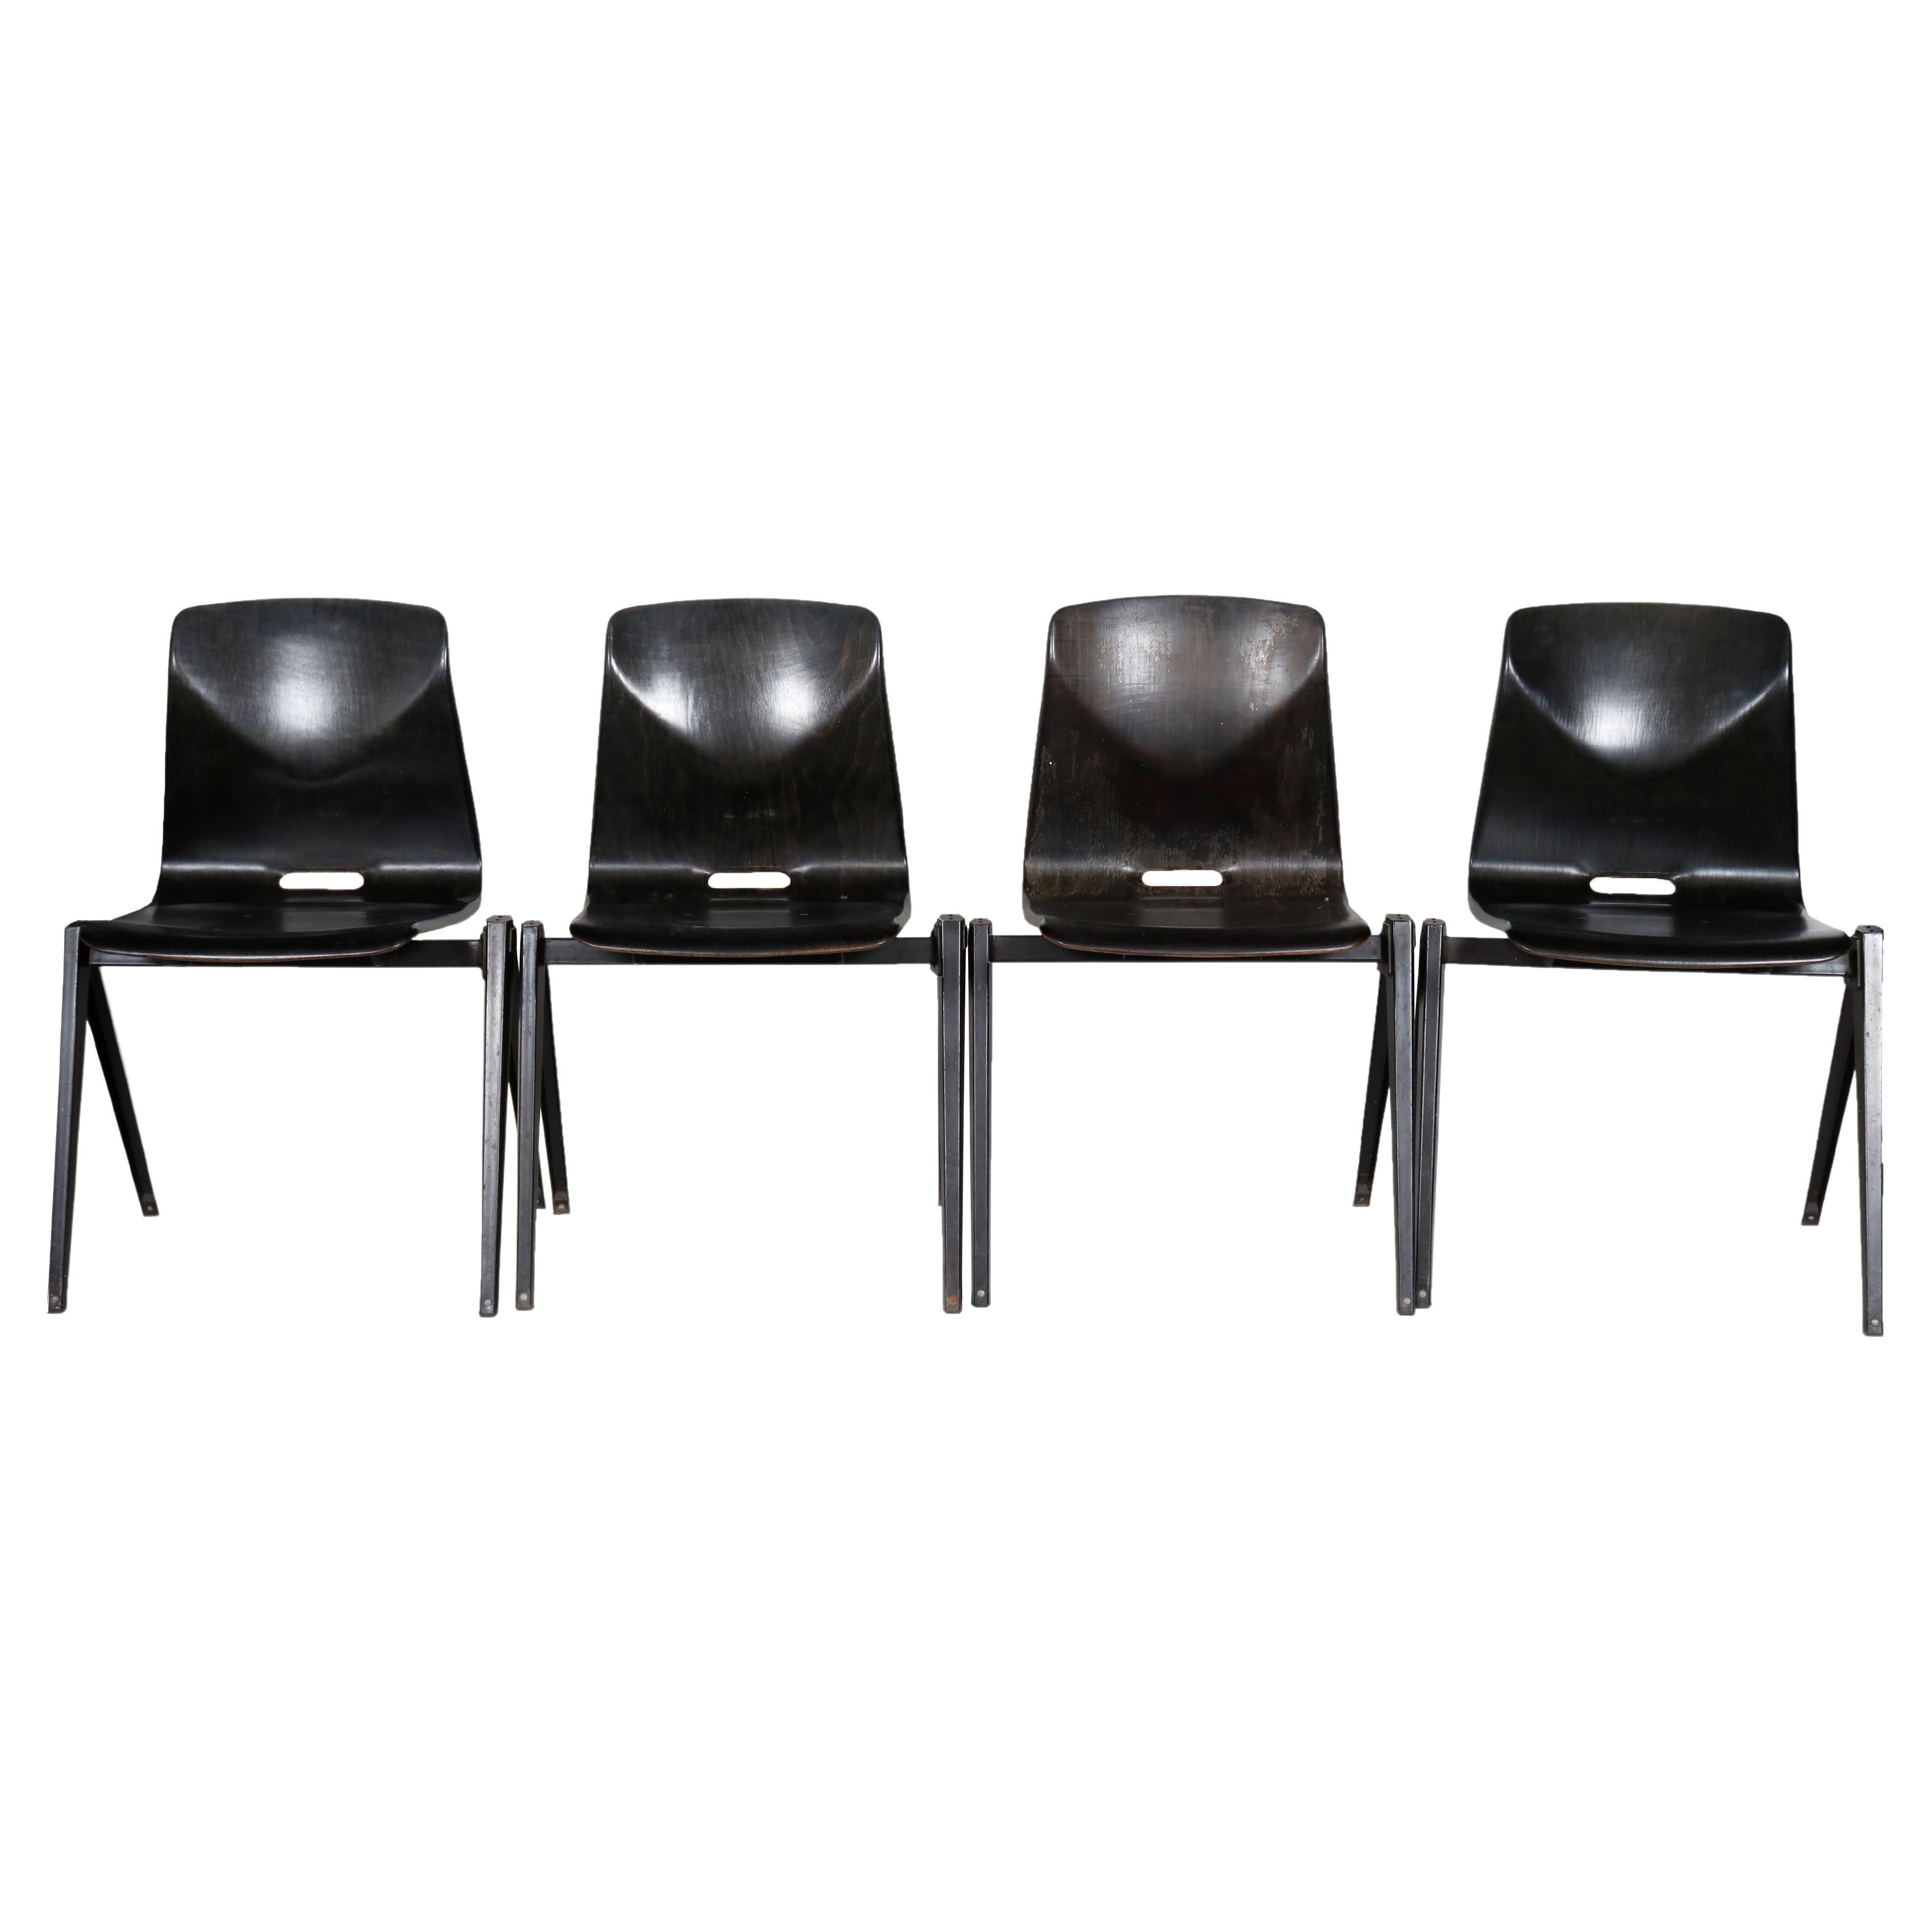 Satz von 4 (vier) Thur-Op-Seat Stühlen, entworfen von Elmar Flötotto für Pagholz.  Modell 522. 

Westdeutschland, ca. 1960.

Die Stühle haben einen ergonomischen, dunkelbraun/schwarz gebeizten Bugholzsitz, der durch ein kantiges Metallgestell in